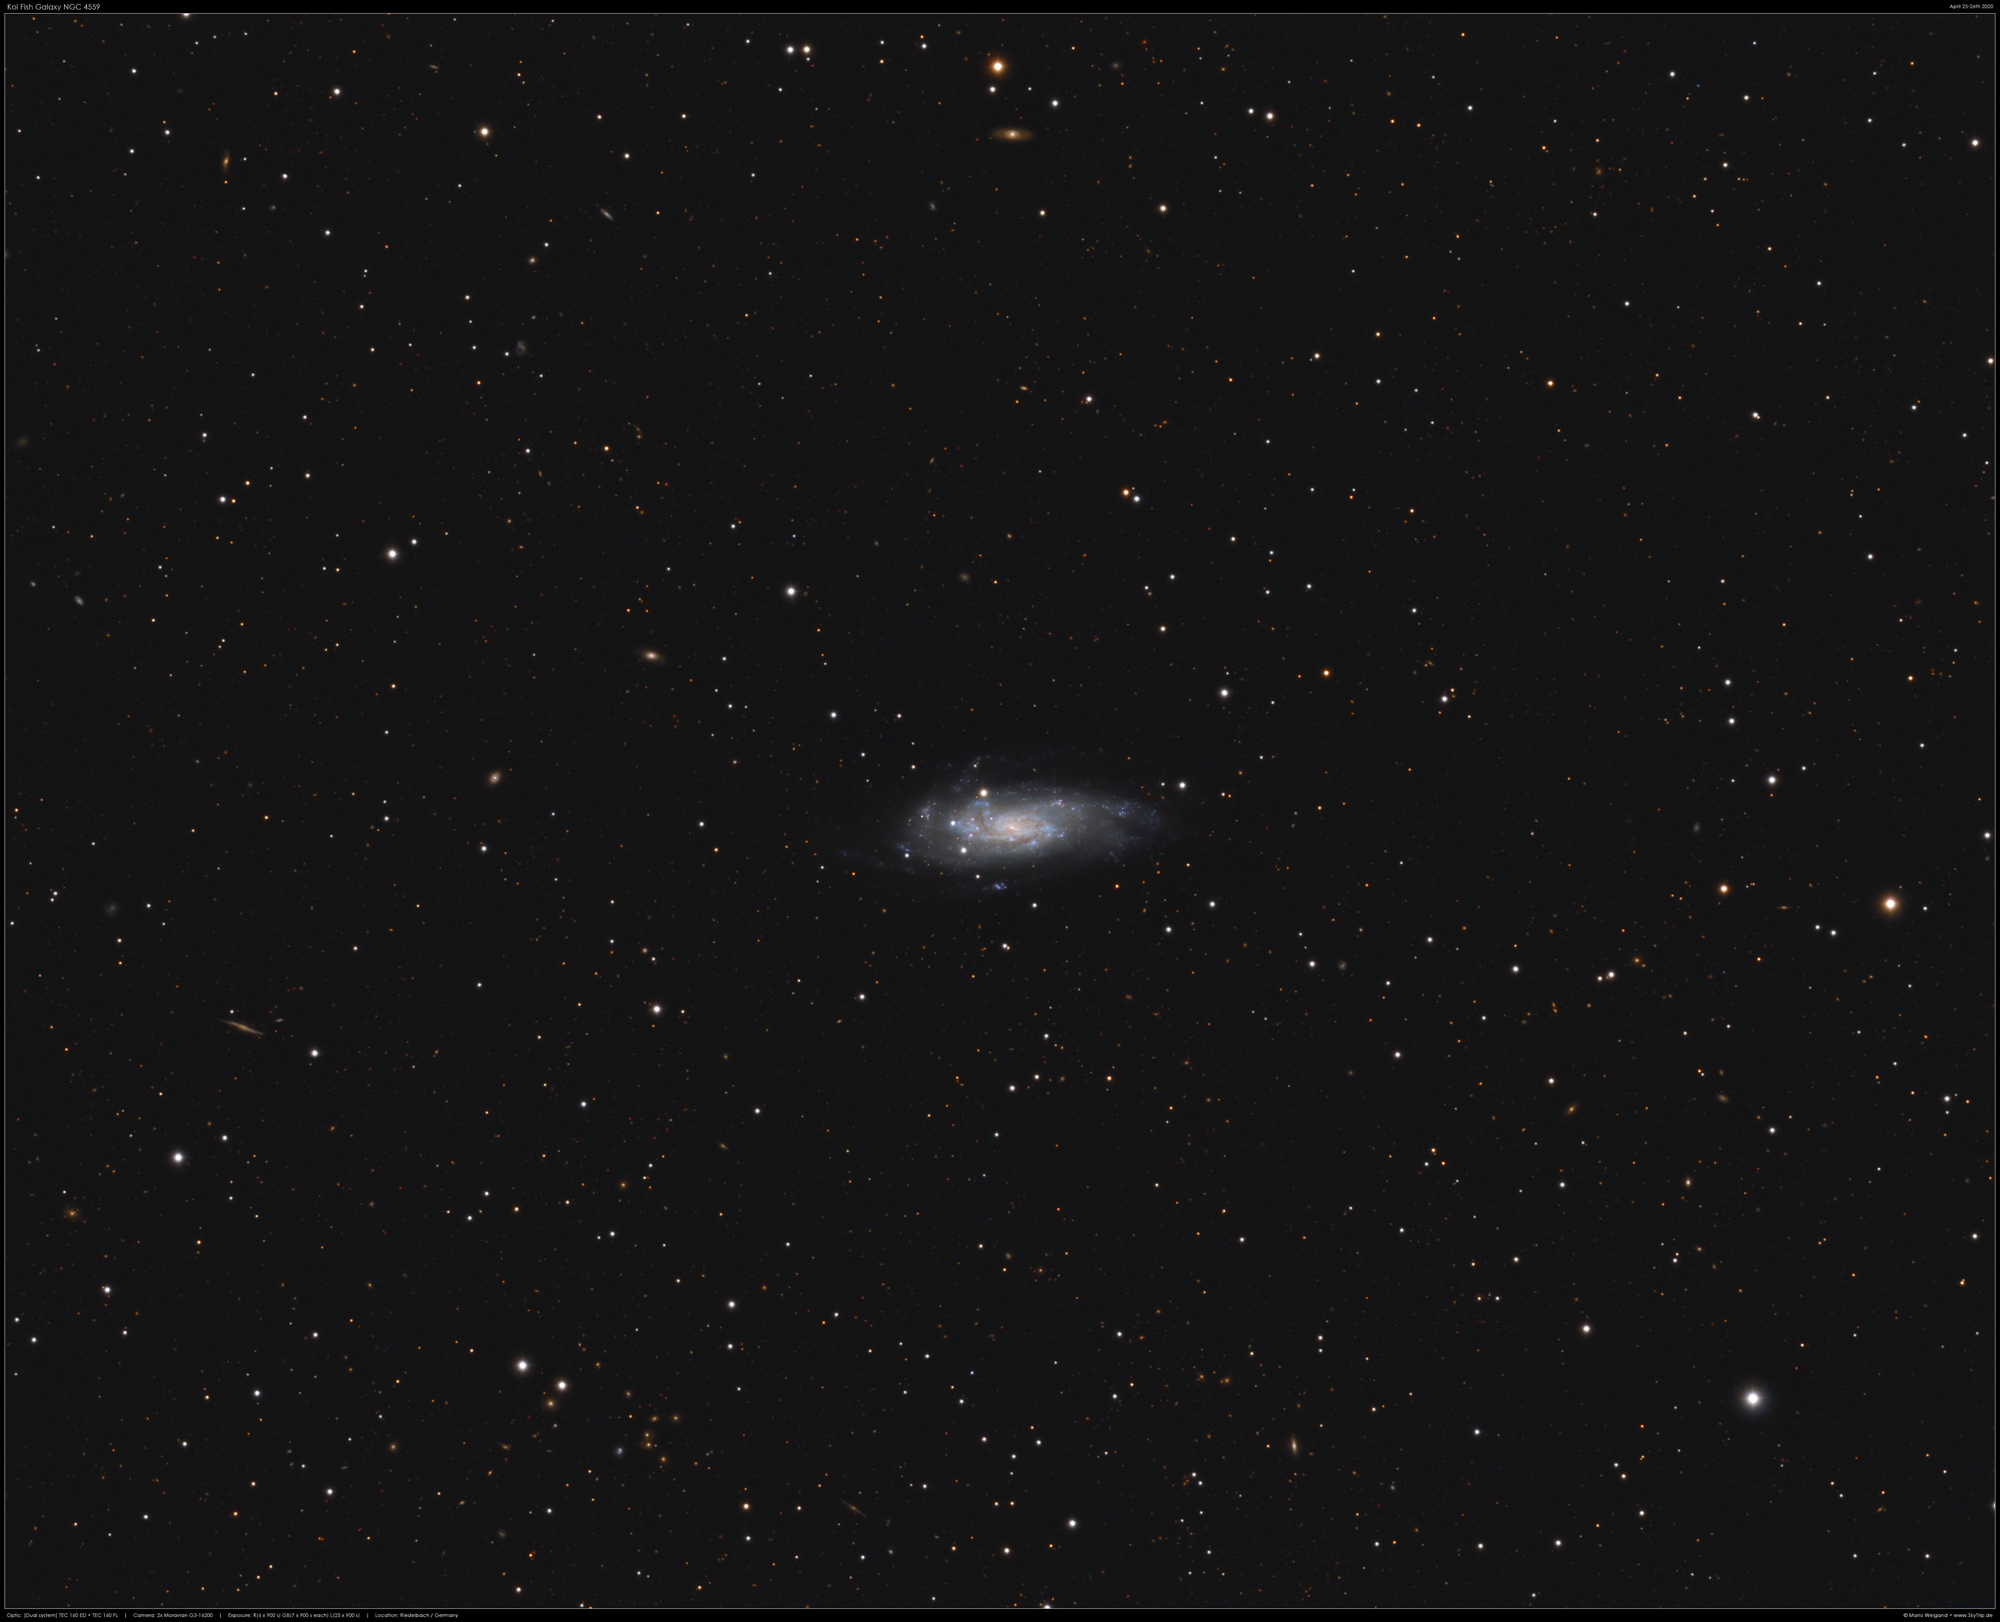 Koi Fish Galaxy NGC 4559